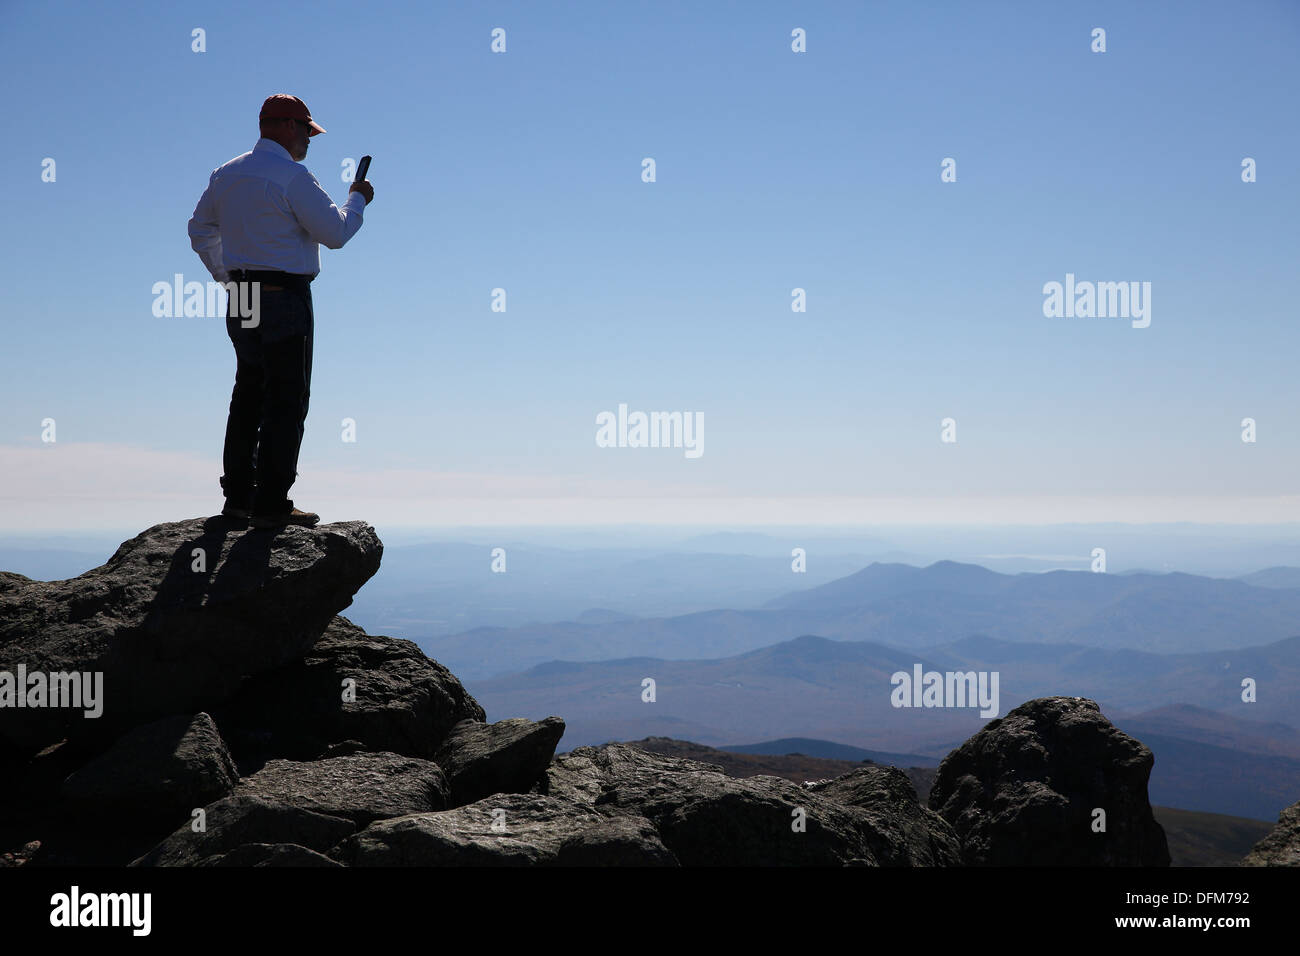 Tourist prende una foto con uno smartphone sulla cima di Mount Washington, New Hampshire, STATI UNITI D'AMERICA Foto Stock